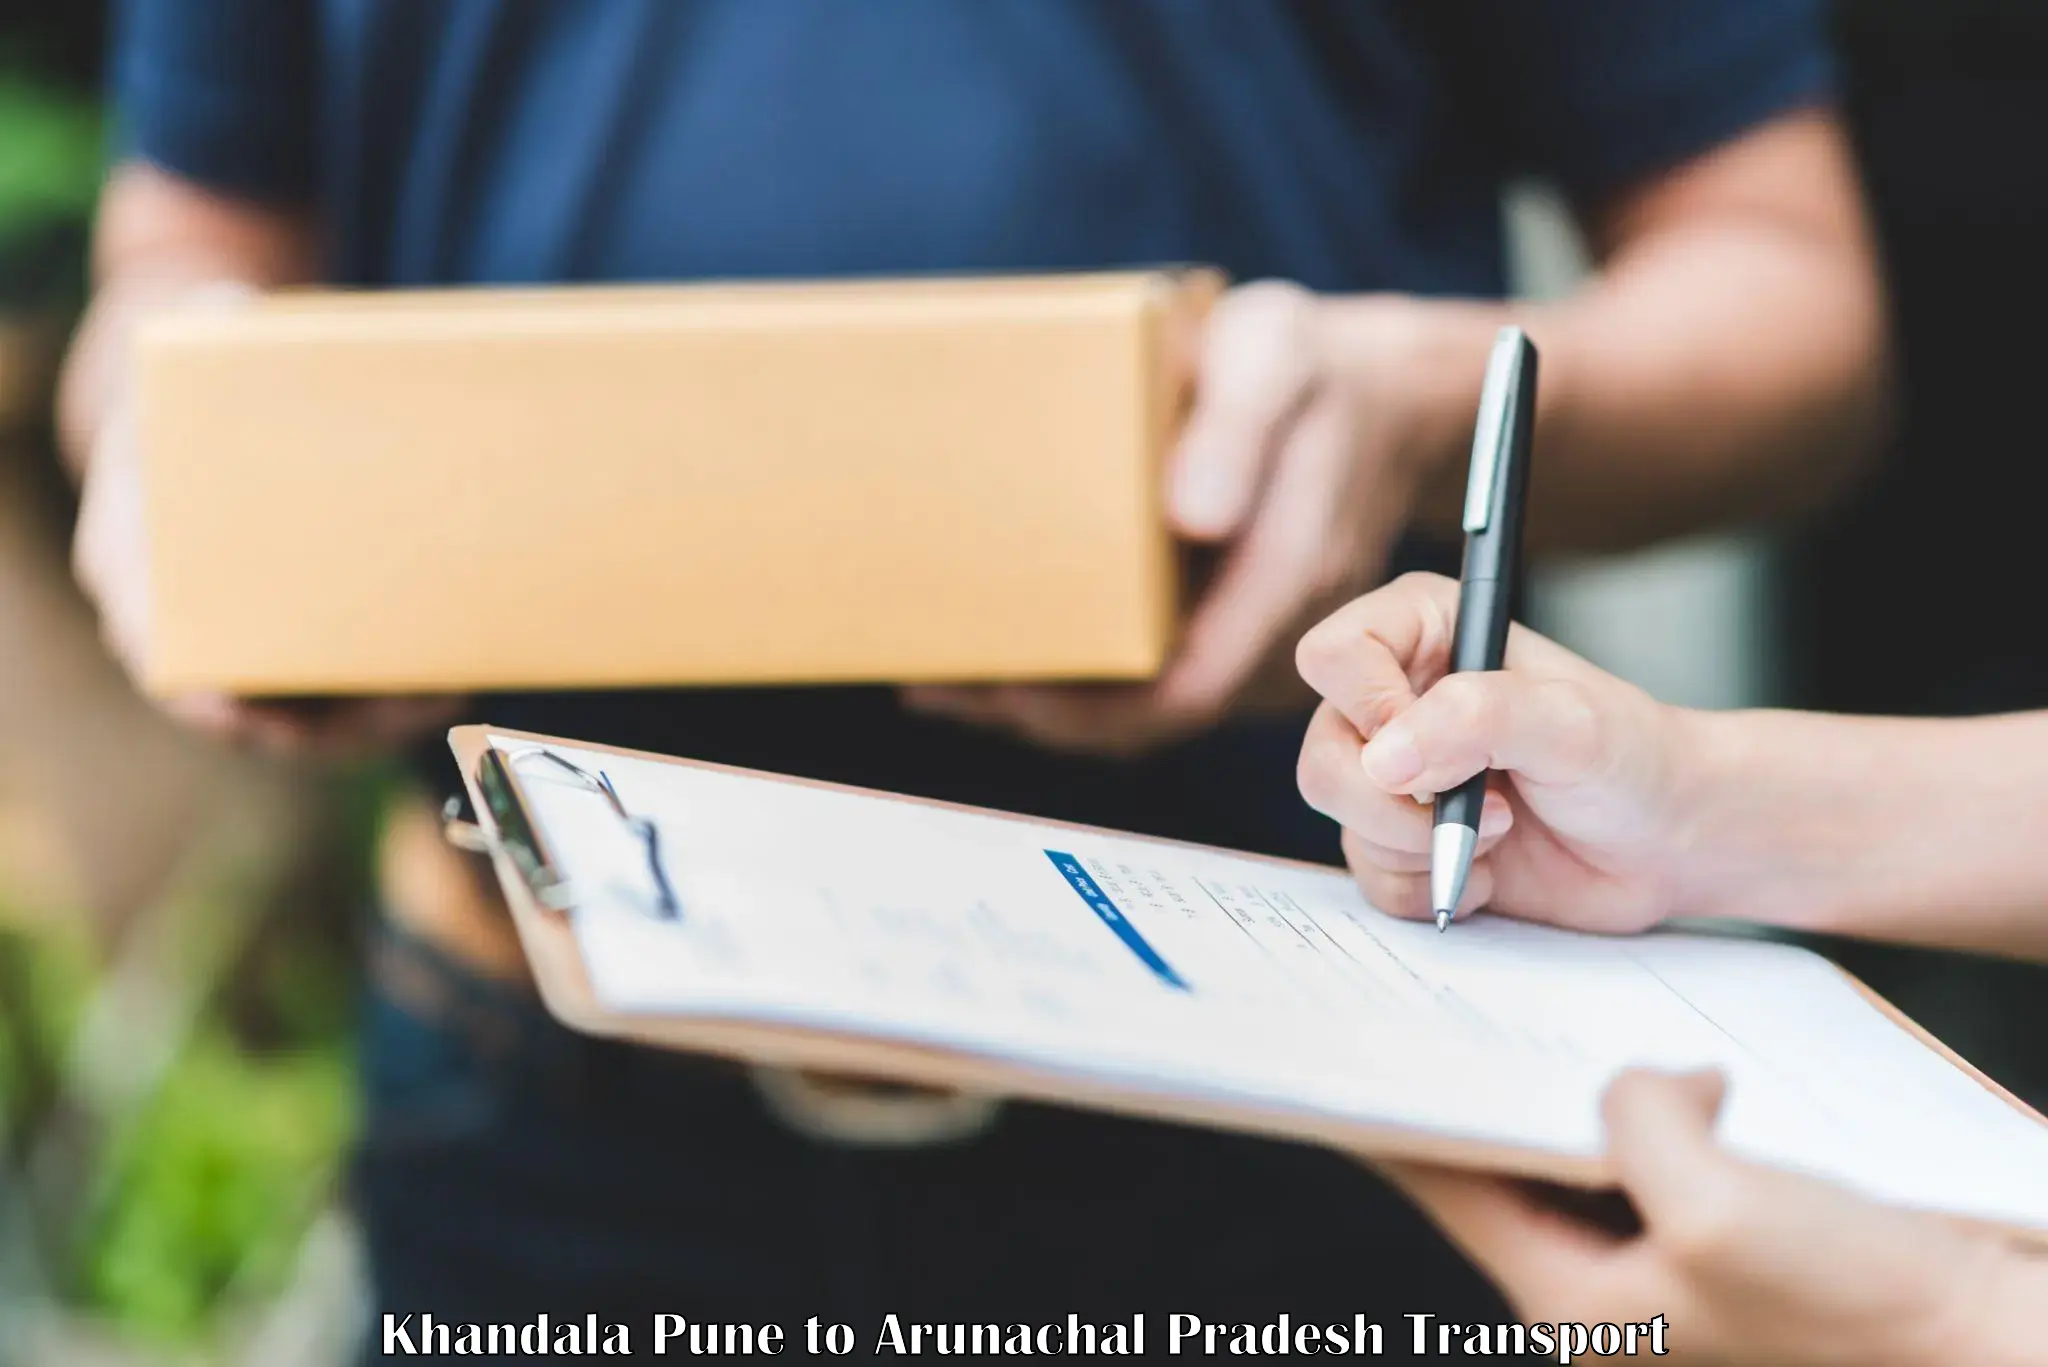 Furniture transport service Khandala Pune to Arunachal Pradesh